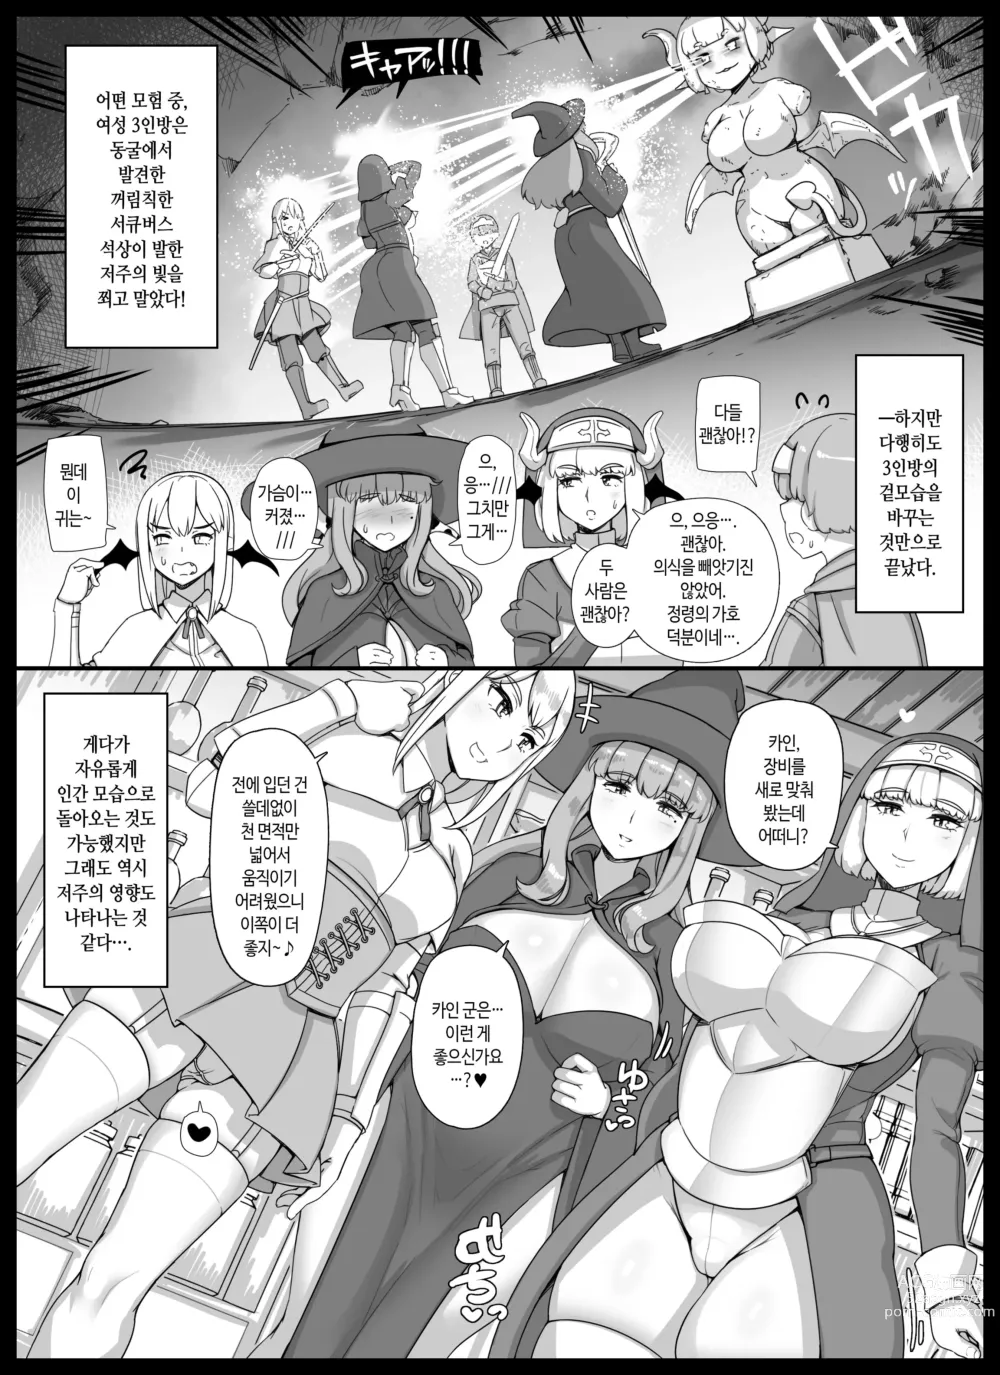 Page 9 of doujinshi 엄마누나이모가 서큐버스인 쇼타 용사 하렘 파티